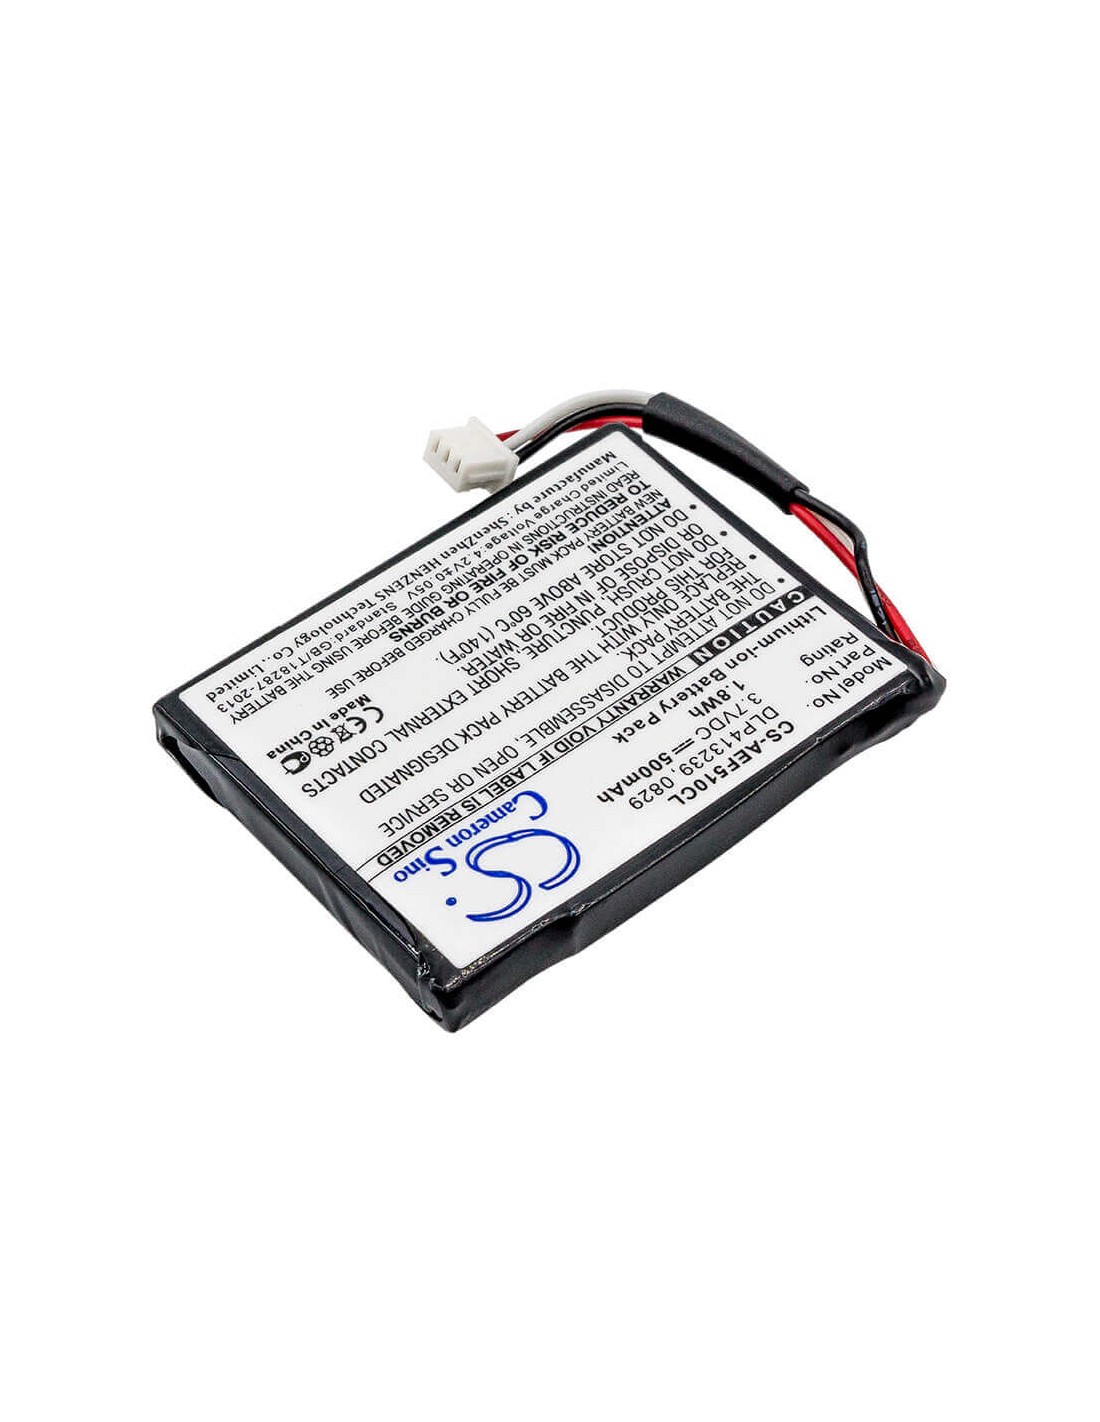 Battery for Texet, Tx-d7950 3.7V, 500mAh - 1.85Wh